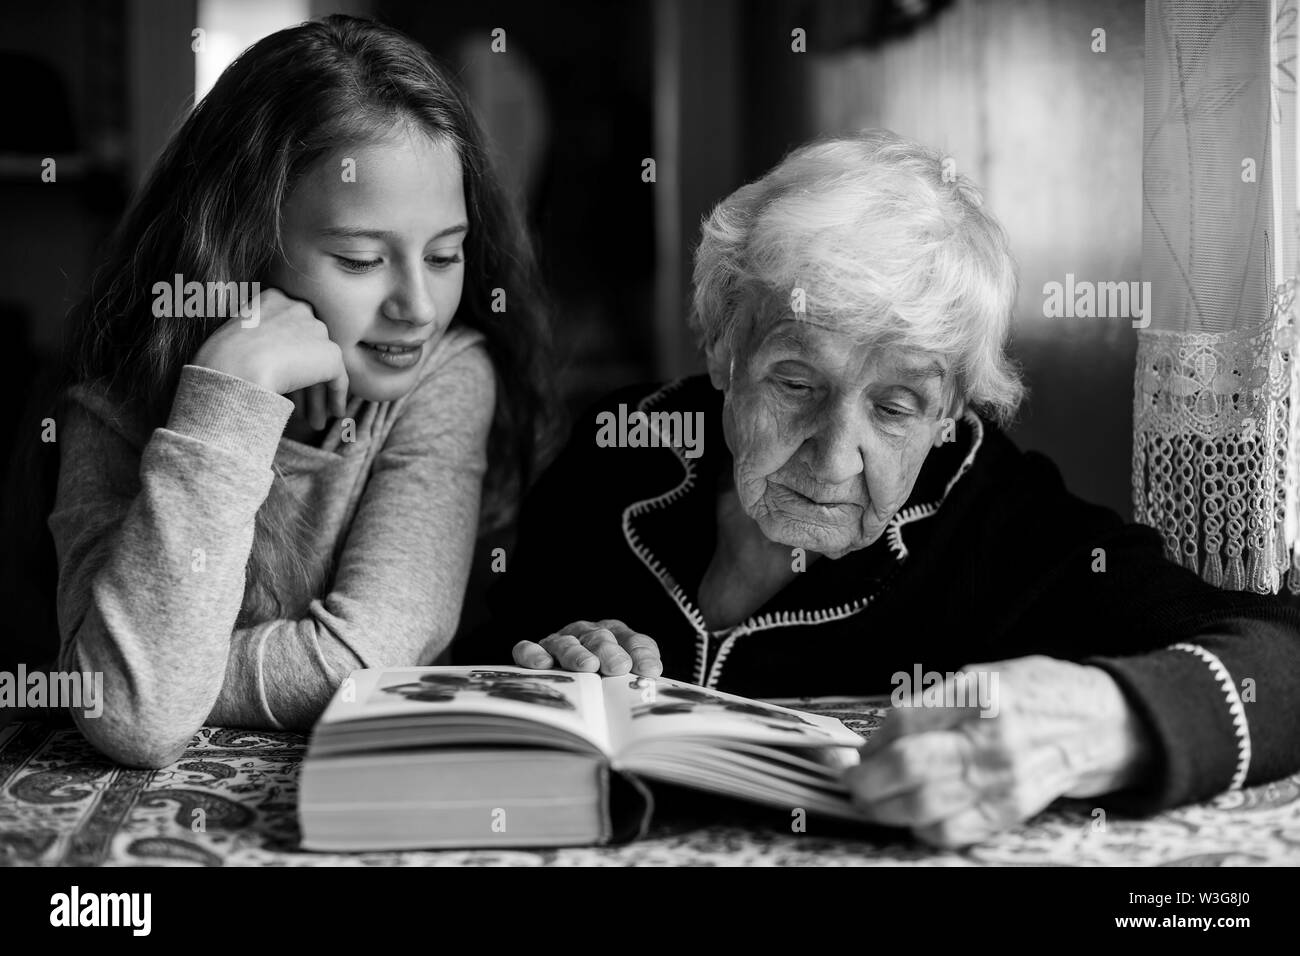 Eine alte Frau - eine Oma mit einem kleinen Mädchen - Enkelin, ein Buch zu lesen. Die Schwarz-Weiß-Fotografie. Stockfoto